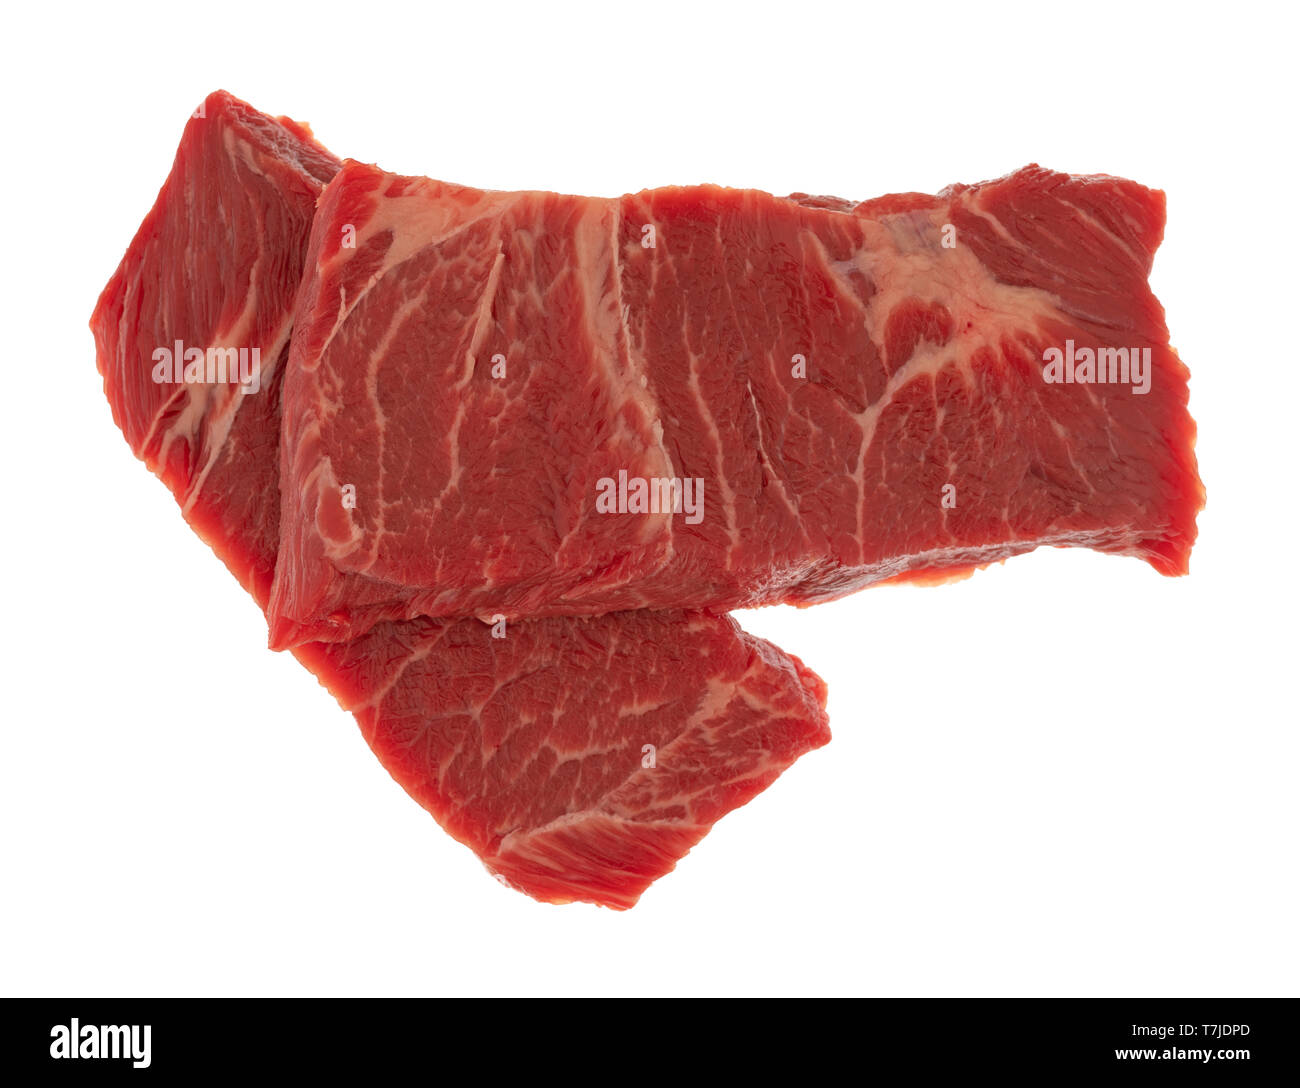 Vue de dessus deux tranches de viande bovine désossée côtes chuck court cuisson steak isolé sur un fond blanc. Banque D'Images